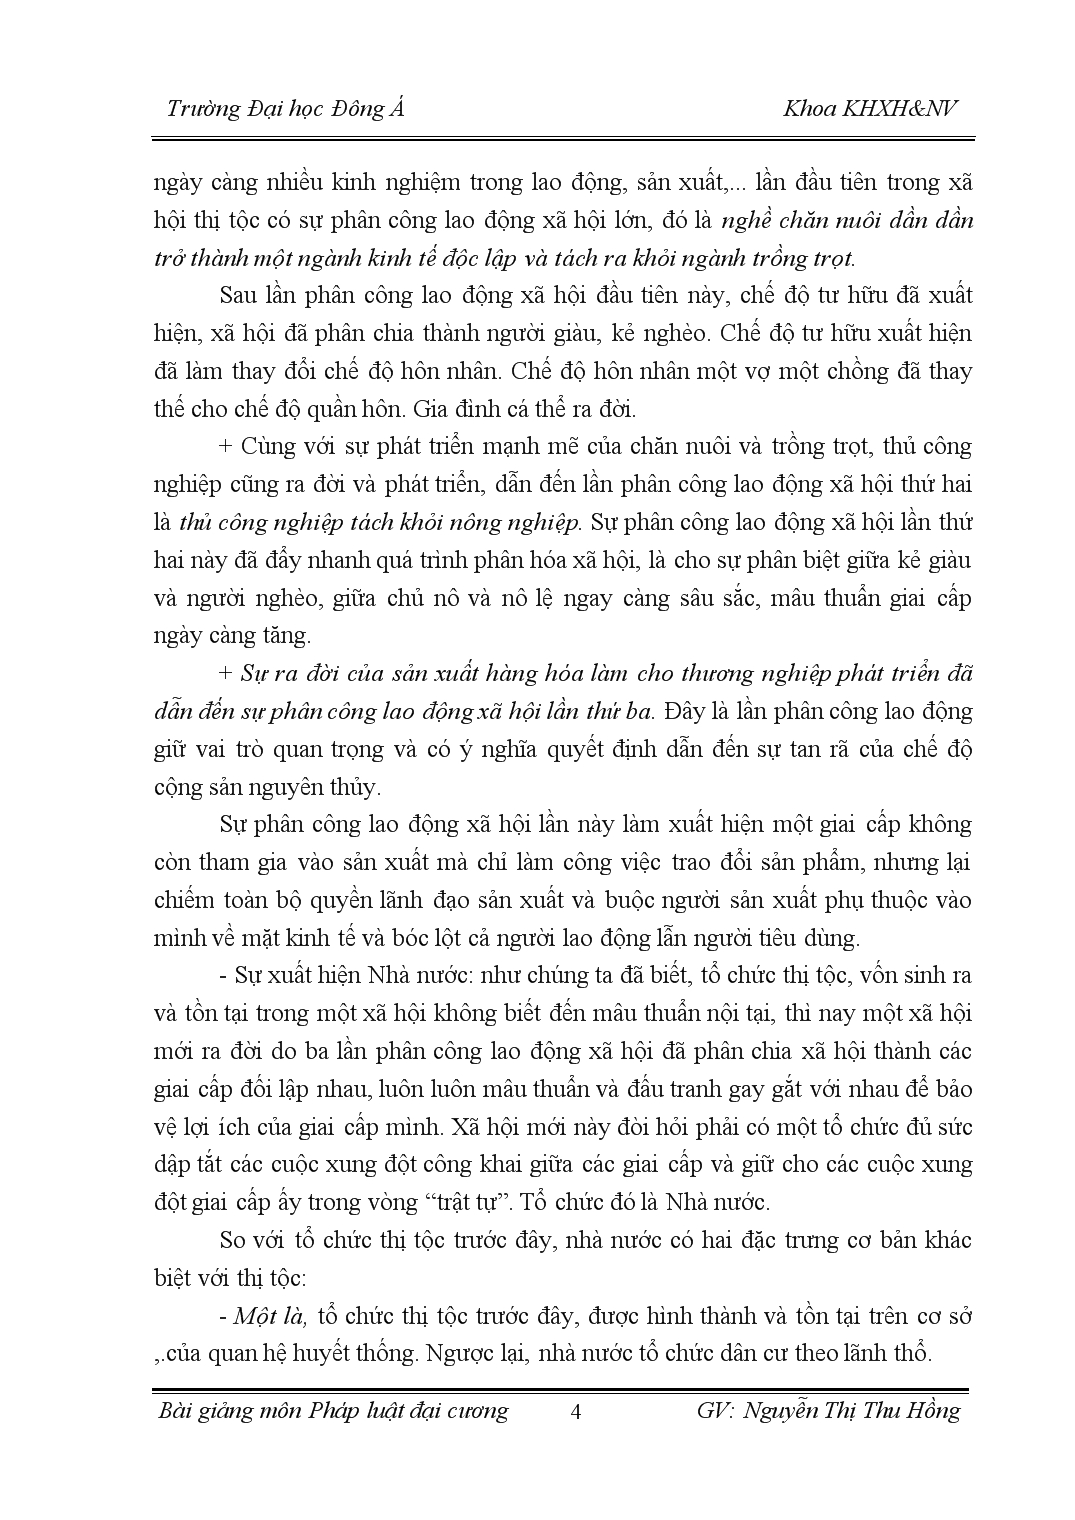 Bài giảng pháp luật đại cương - Nguyễn Thị Thu Hồng trang 4